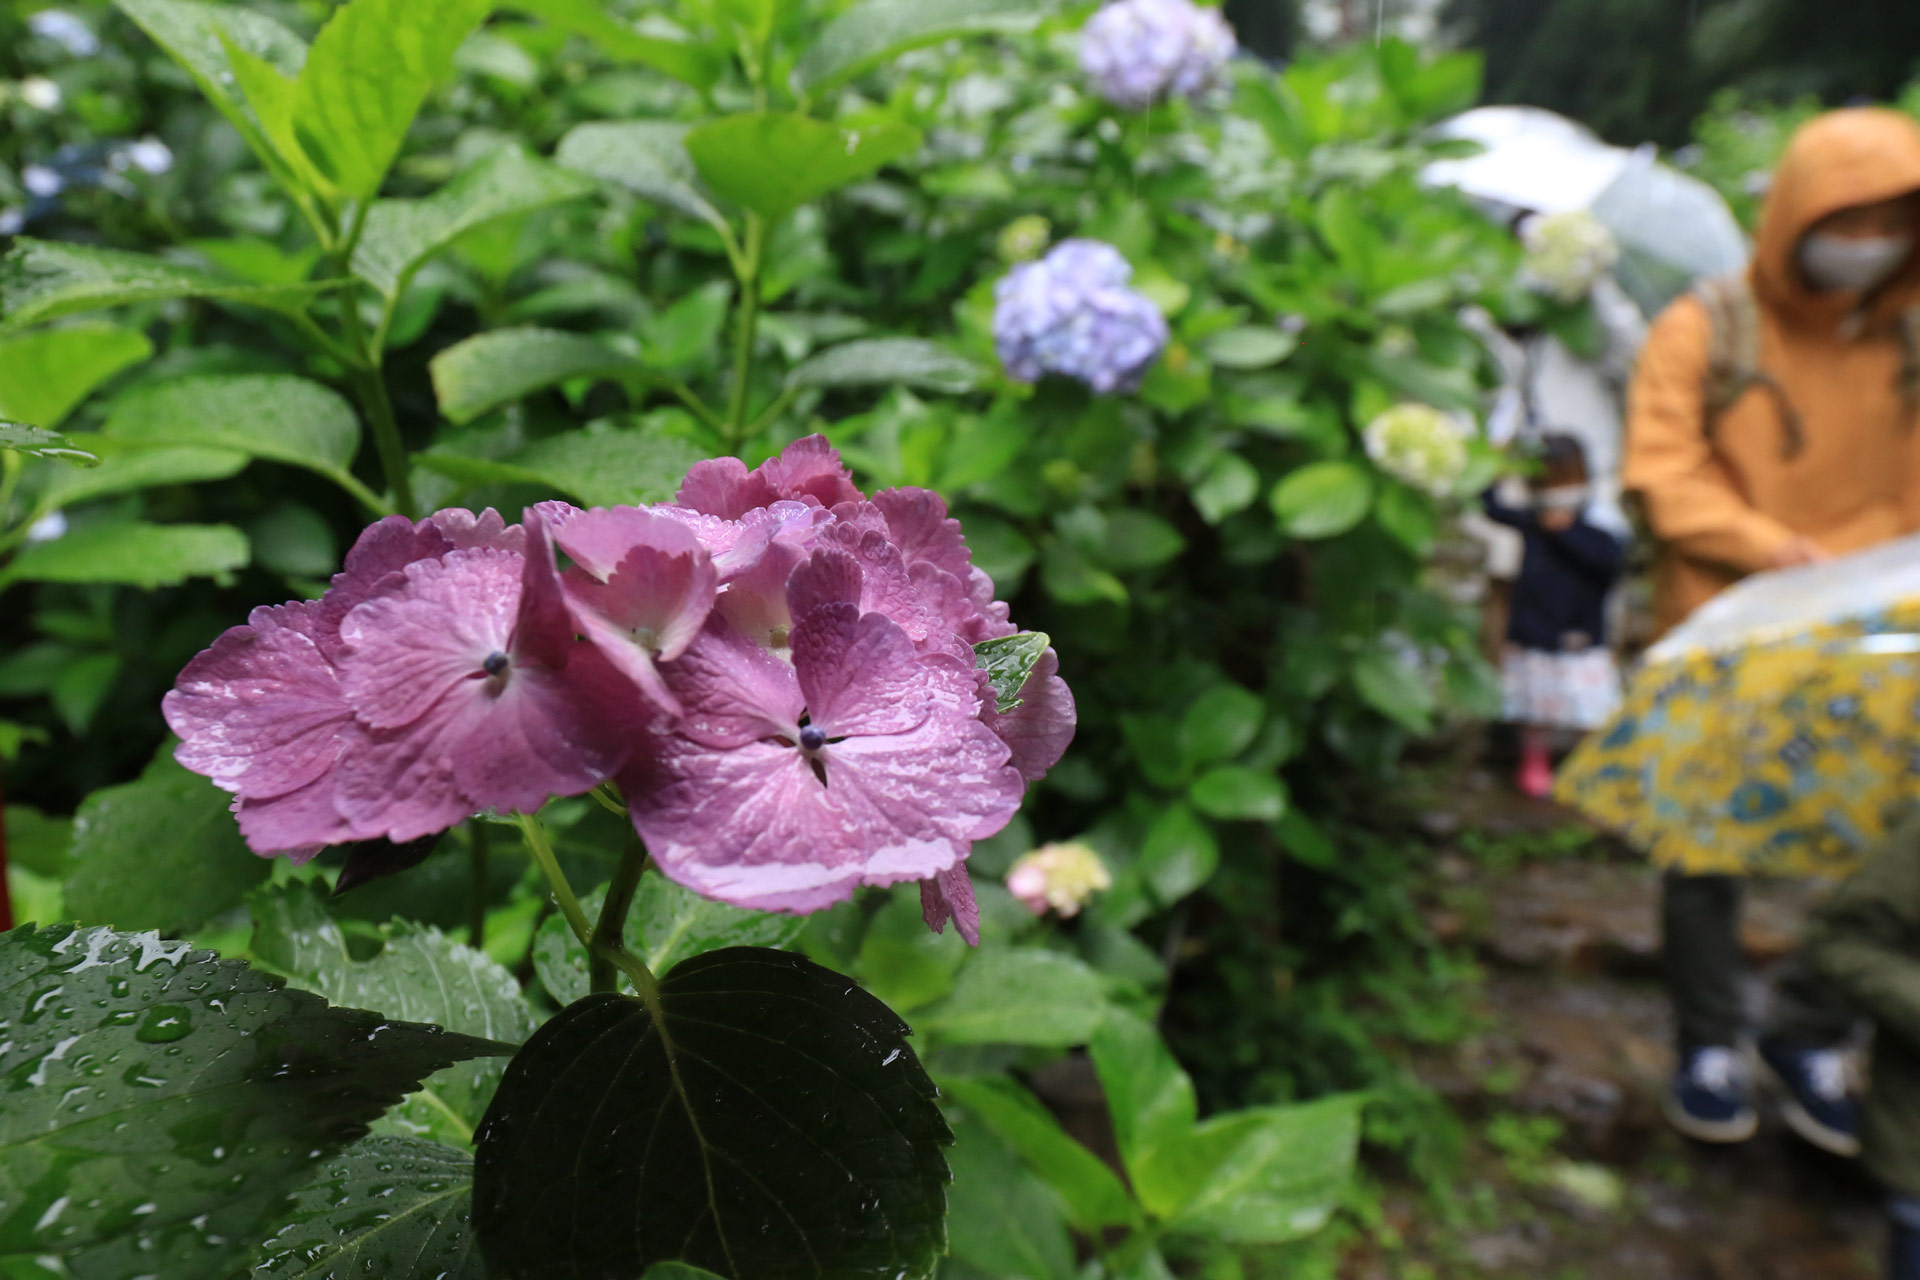 四季香る大平山神社と雨引観音バスツアー